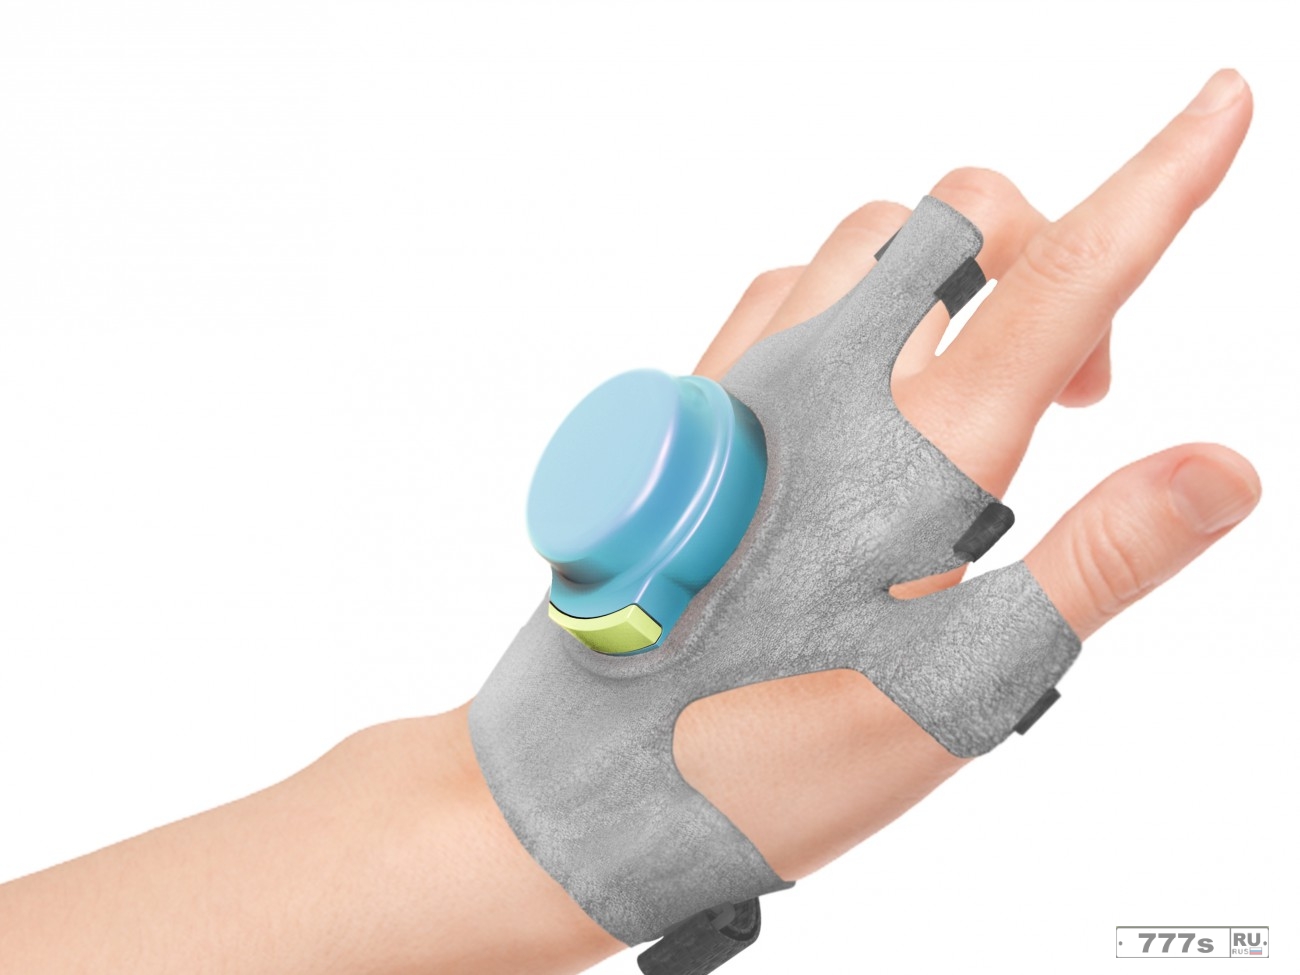 GyroGlove - перчатки. Новые технологии!